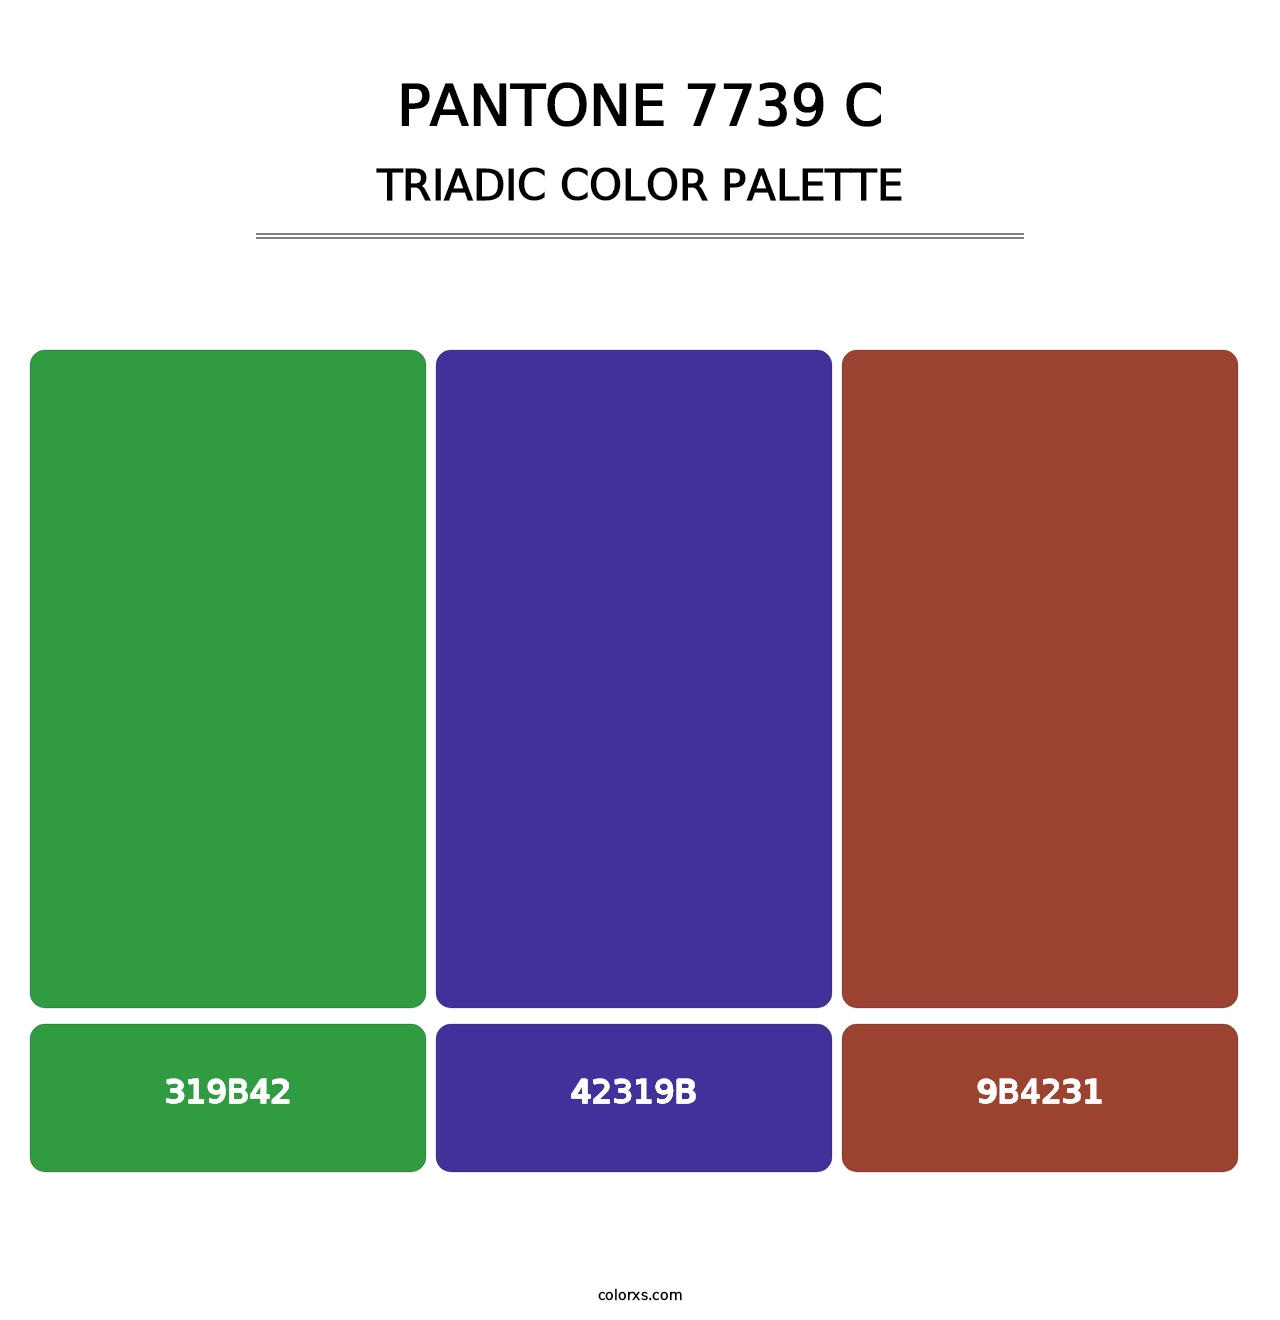 PANTONE 7739 C - Triadic Color Palette